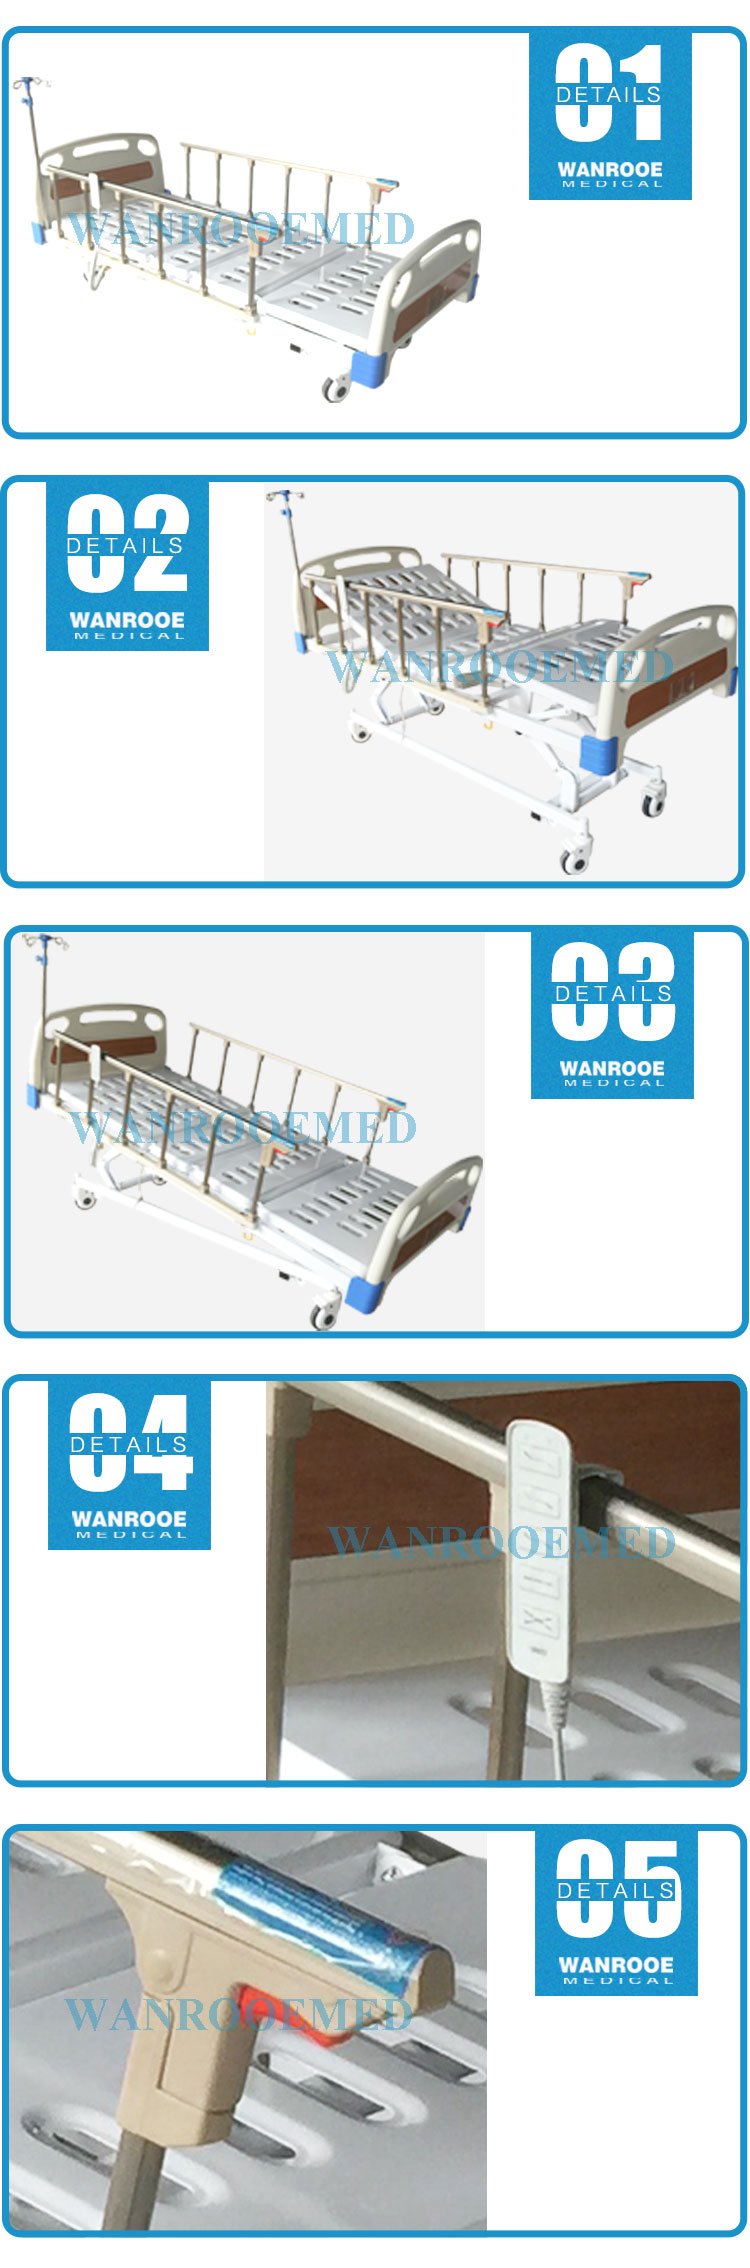 Metal Medical Bed, Hospital Metal Bed, Electric Medical Bed, 5 Function Electric Bed, Hospital Bed With Wheels